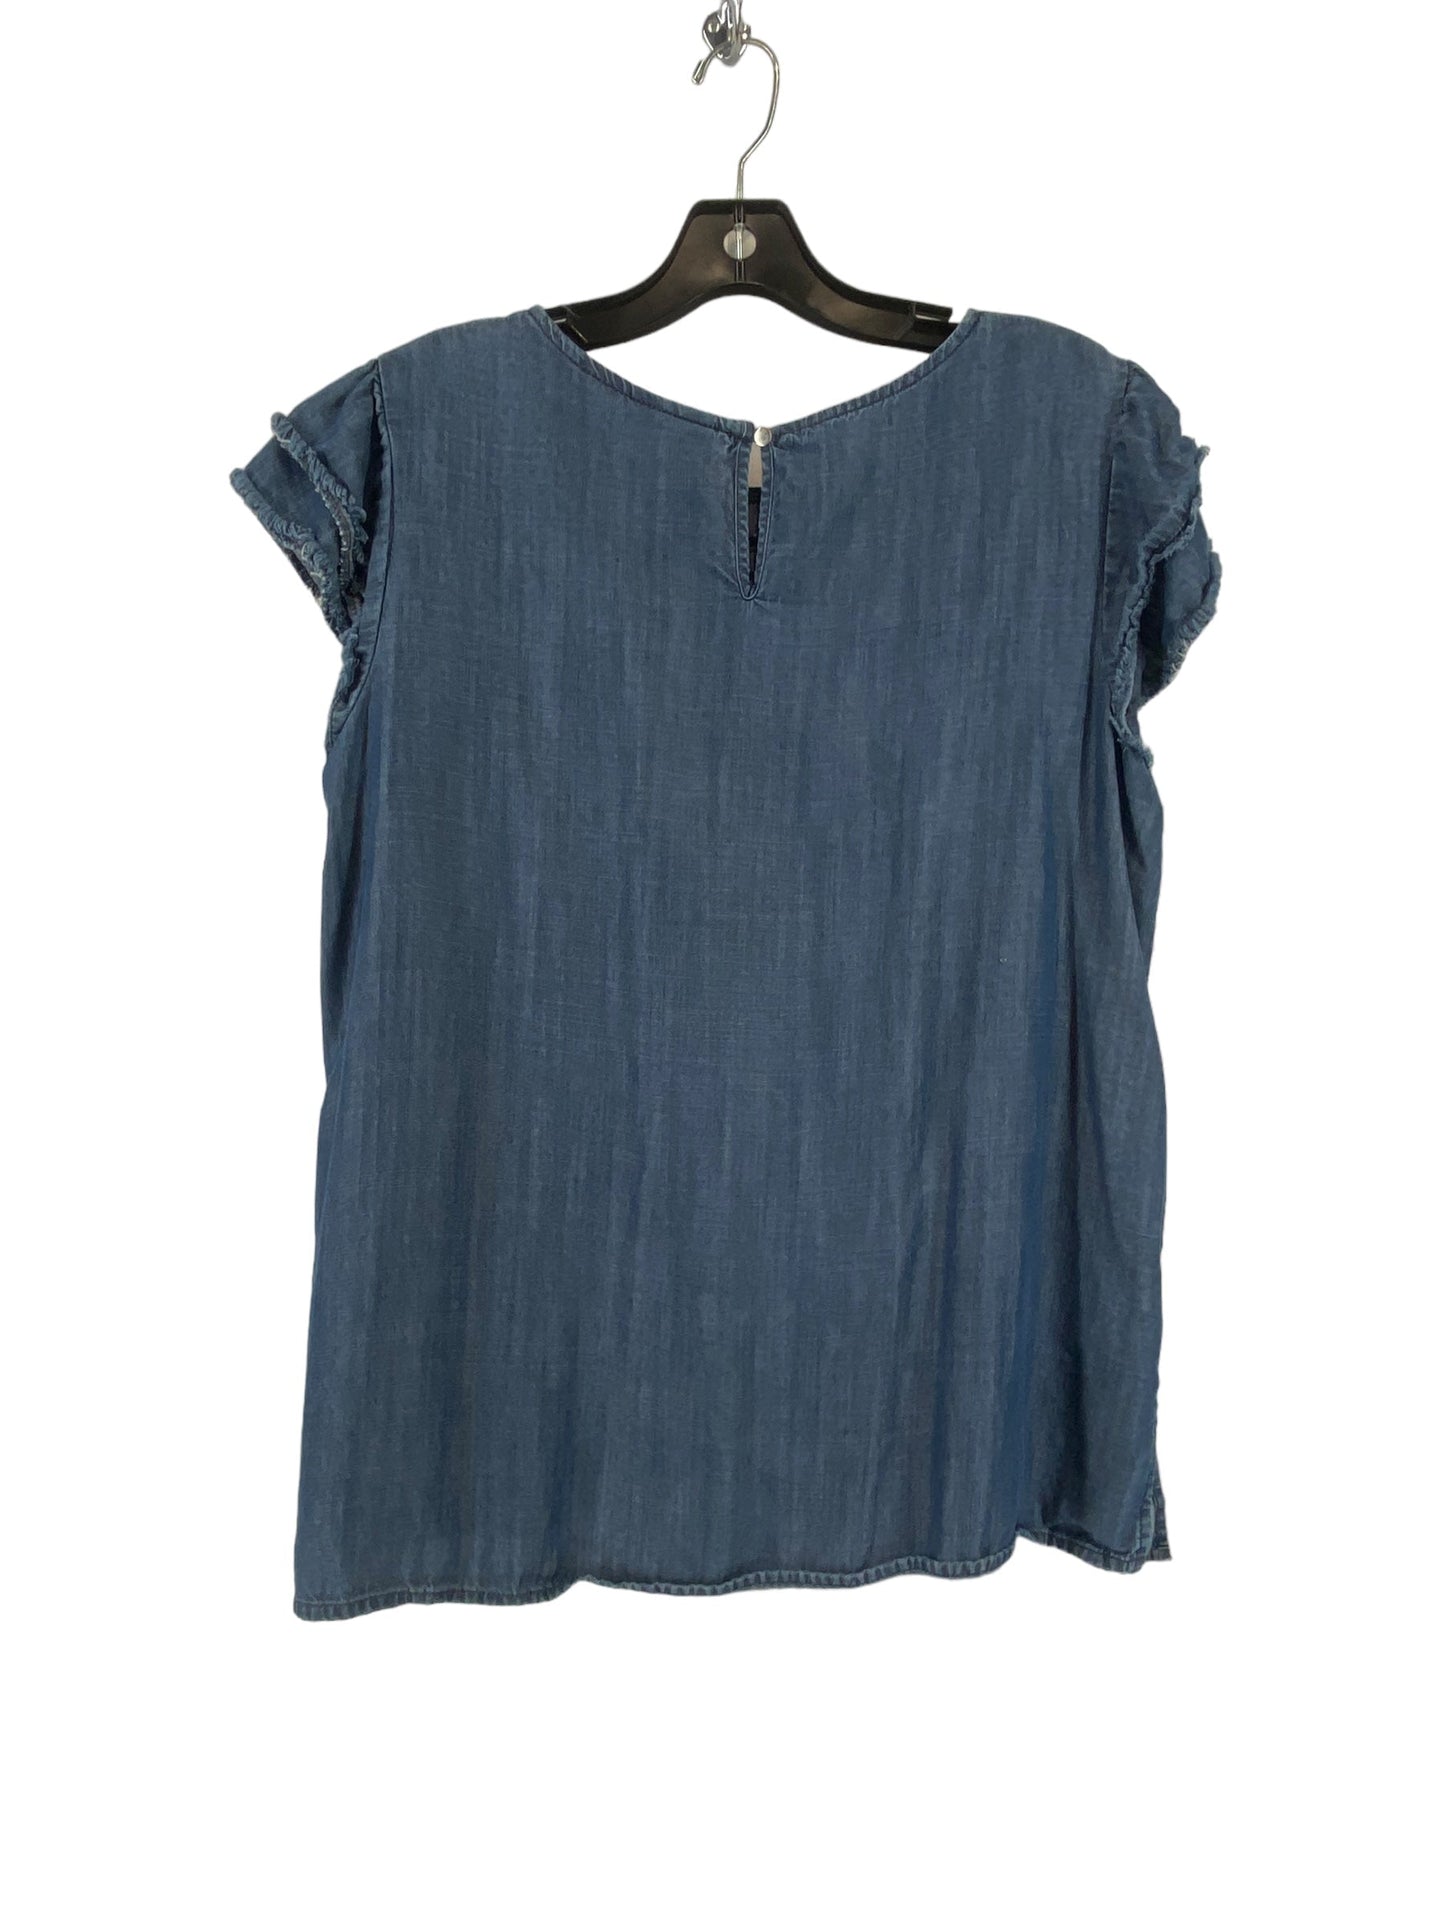 Blue Denim Top Short Sleeve Liz Claiborne, Size L